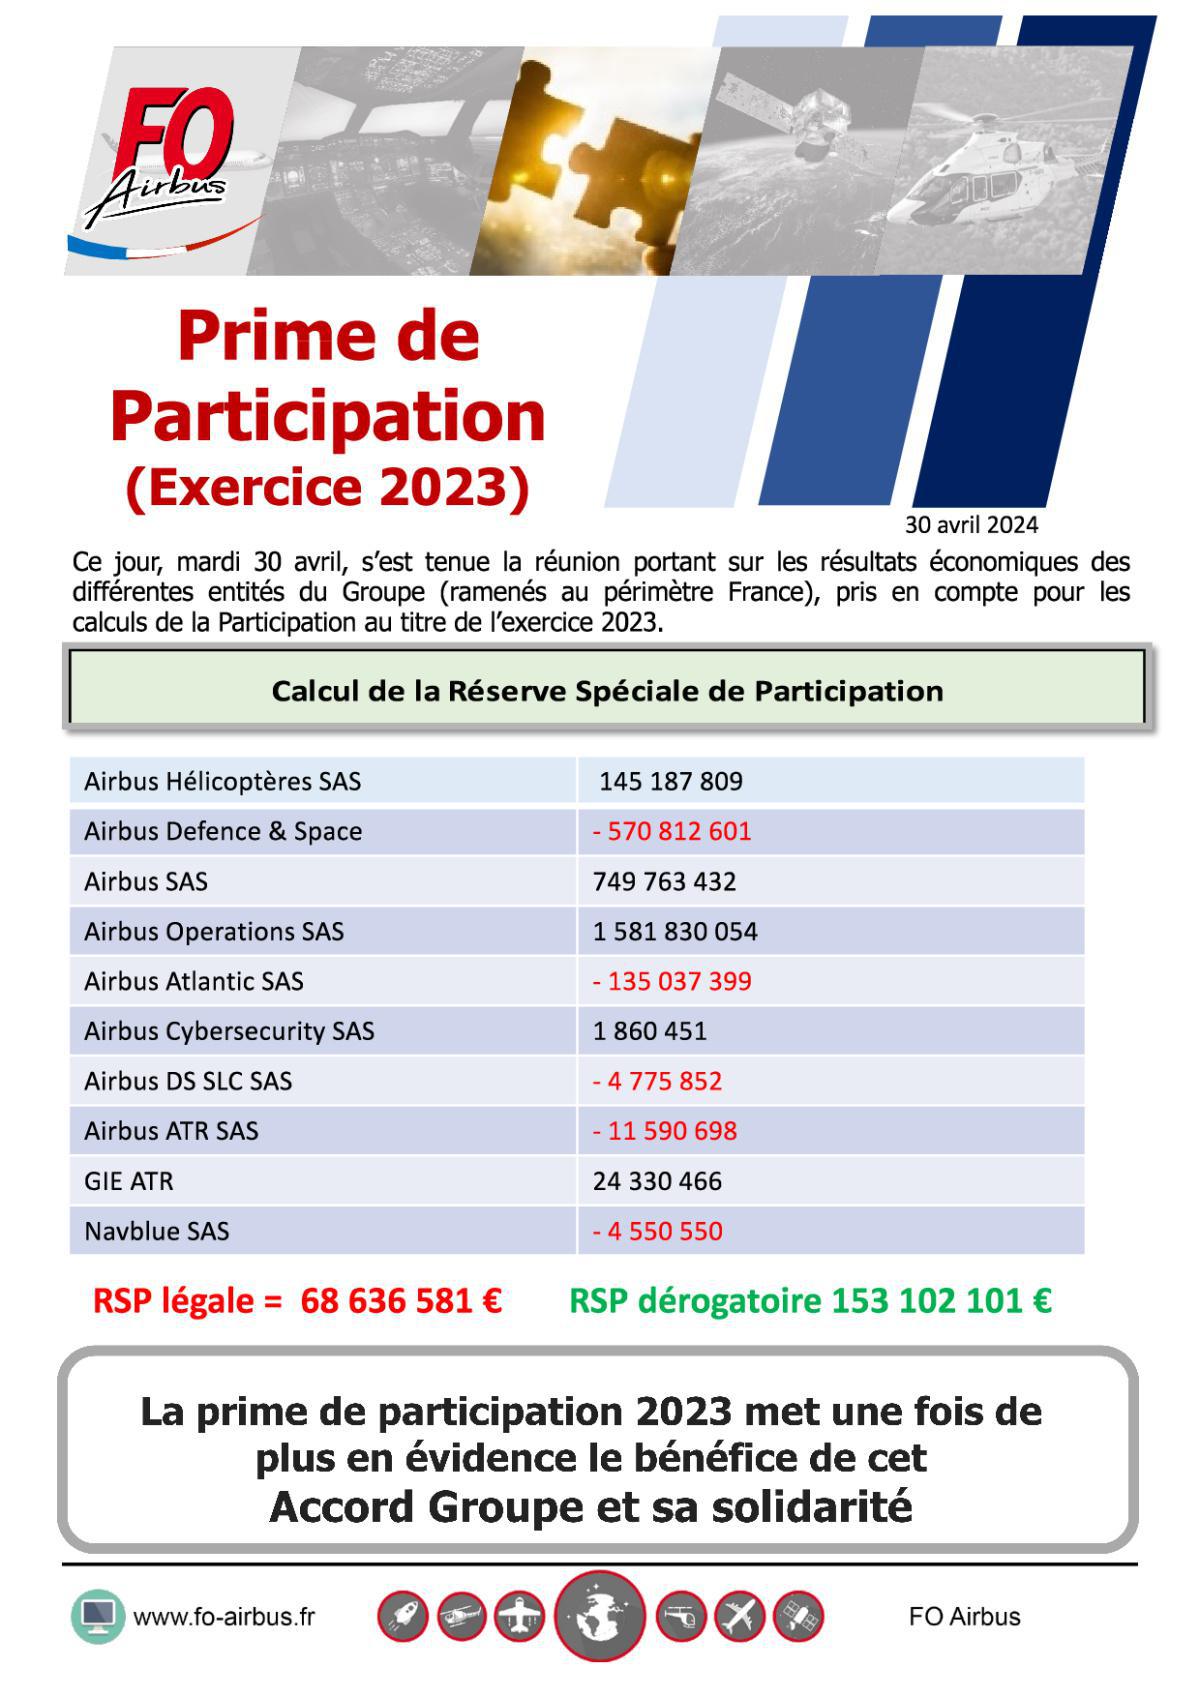 Prime de Participation - Exercice 2023